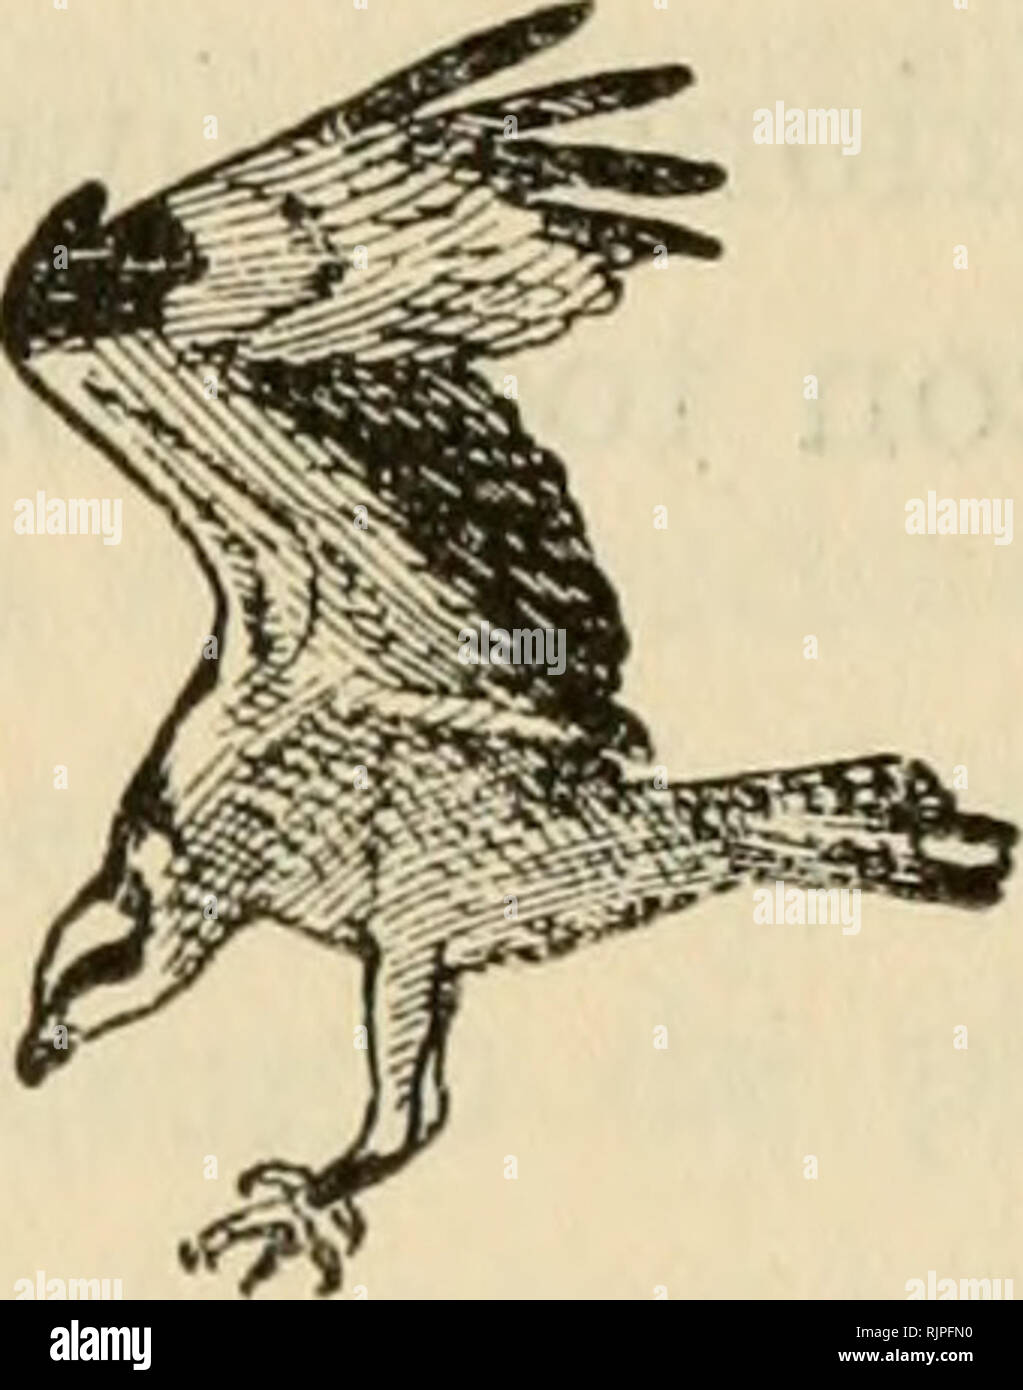 Aves de rapiña y su caza. Birds of prey; Falconiformes. — 54 El águila  pescadora. (Pandion haliaetus.) DESCRIPCIÓN El balbusardo, llamado águila  pescadora, y de cuyo colorido general de plumaje podrá